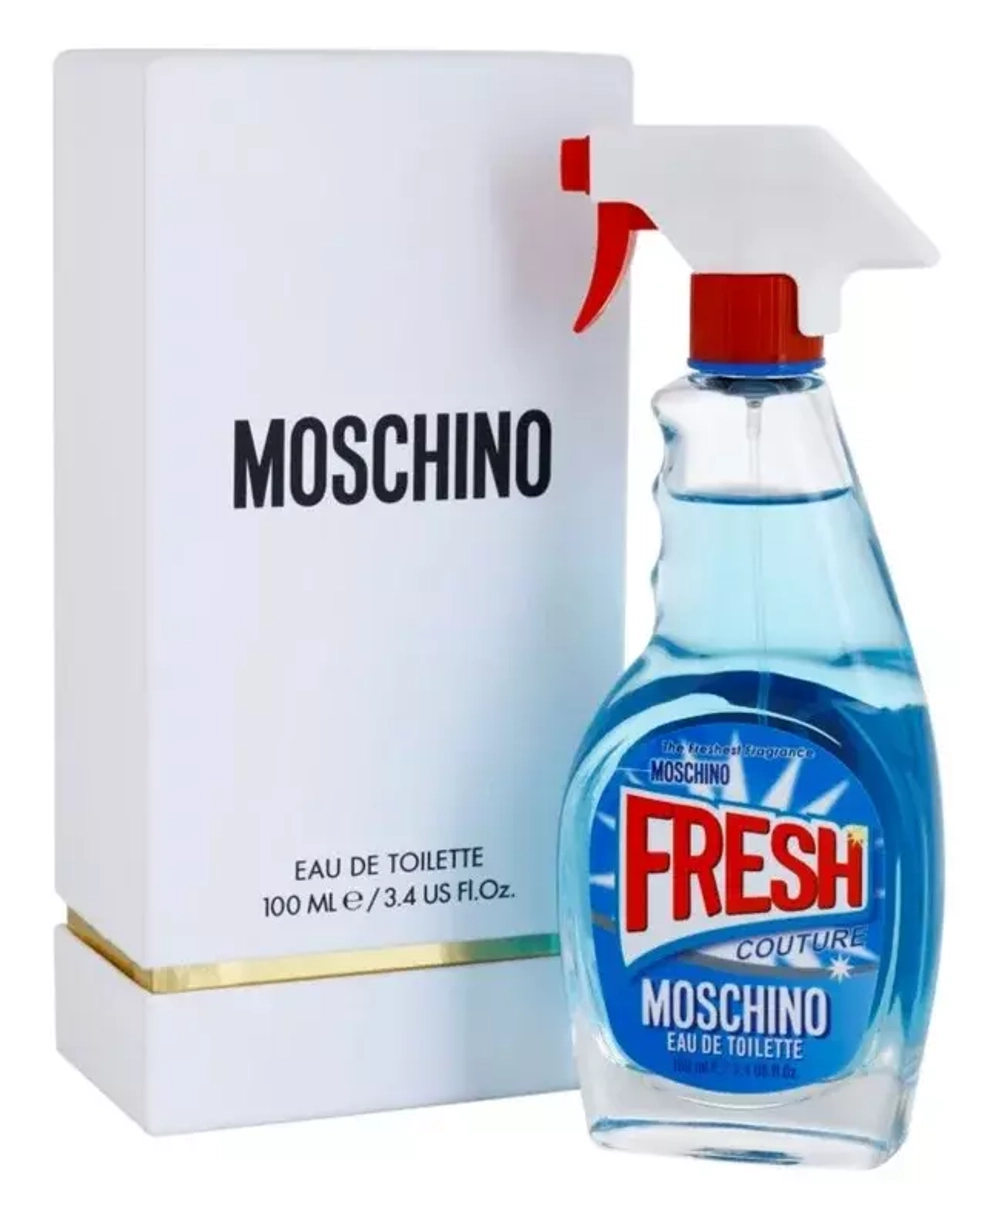 Moschino Fresh Couture Eau de Toilette for Women